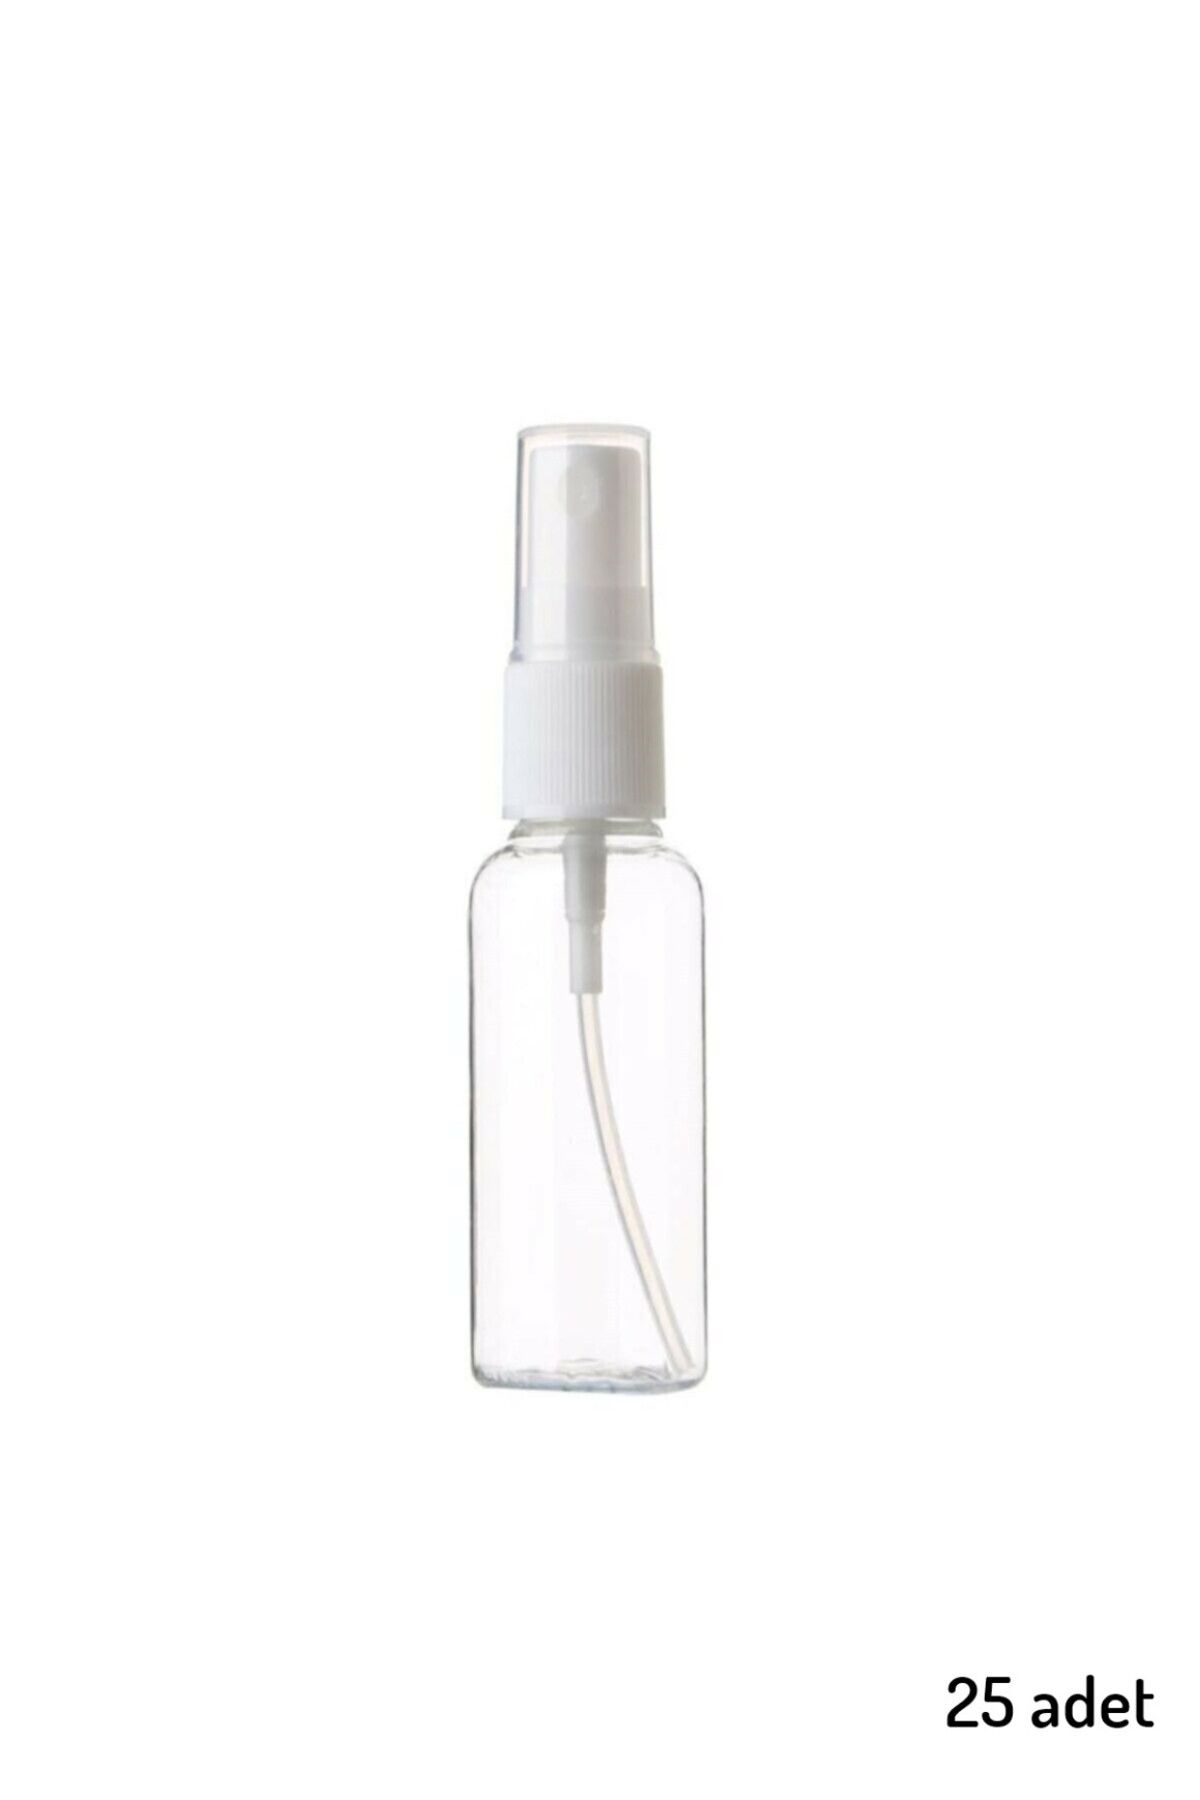 JULIANO 25 Adet Boş Şişe Spreyli Kolonya Şişesi Doldurulabilir Cep Plastik Parfüm Şişesi 30 ml